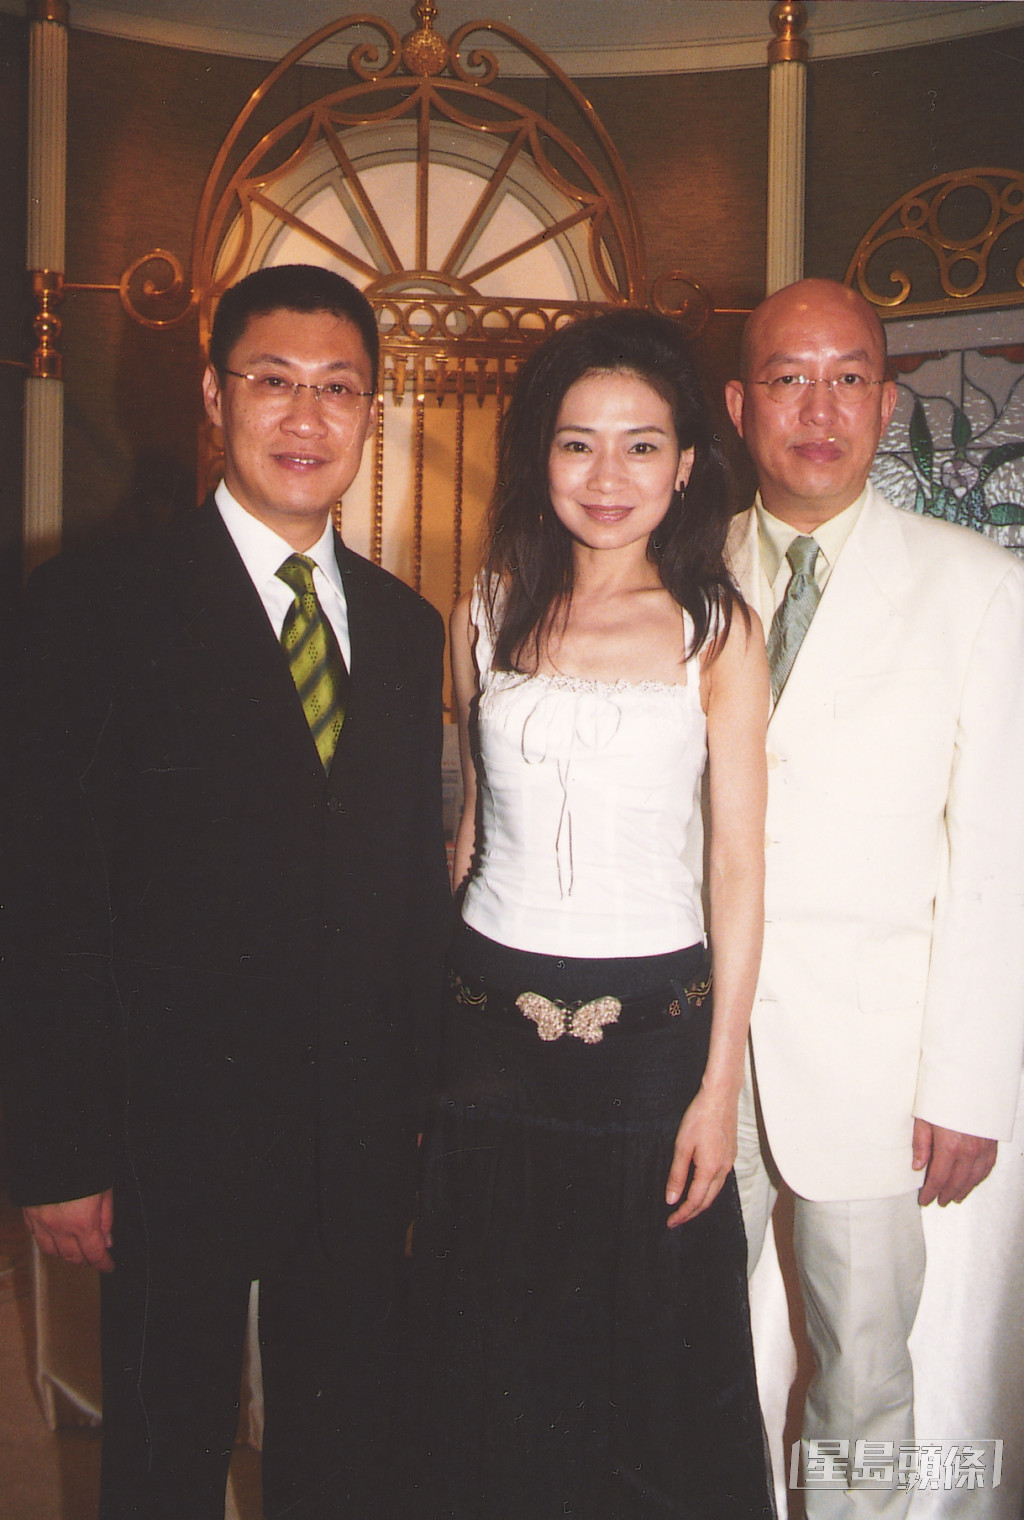 吴丽珠1980年加入第9期无线电视艺员训练班。